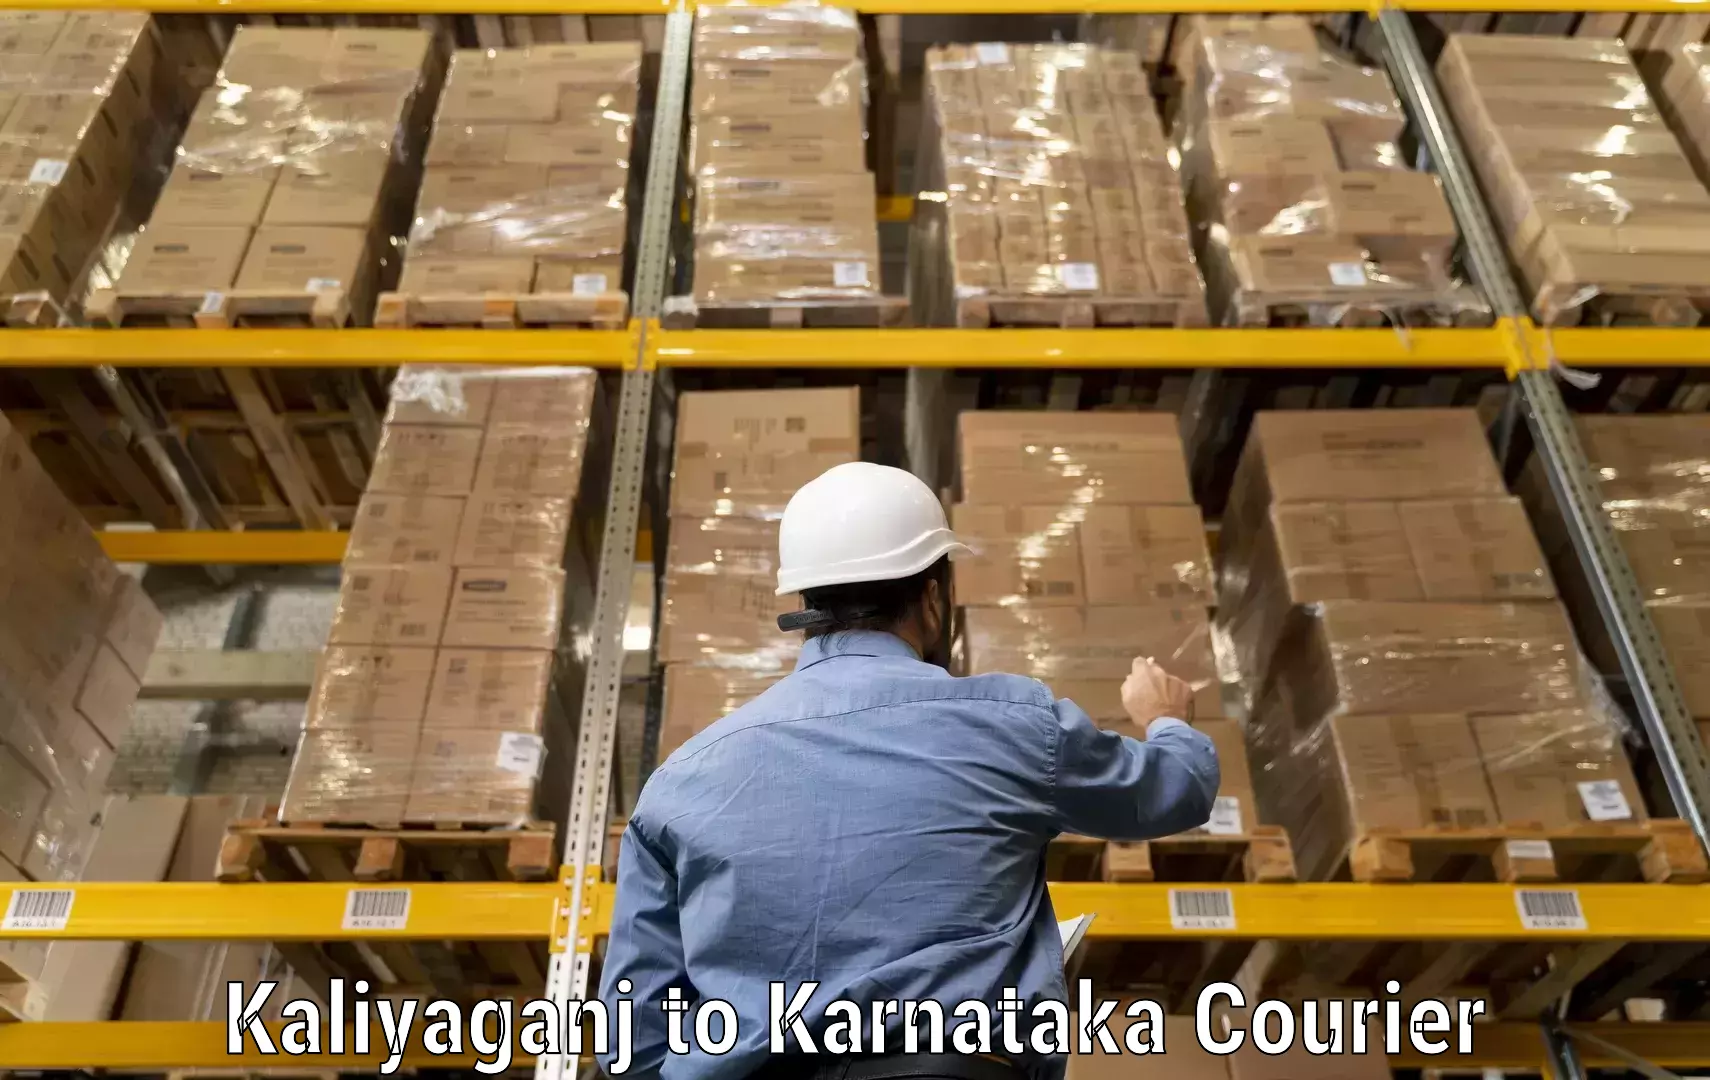 Courier service comparison Kaliyaganj to Karnataka